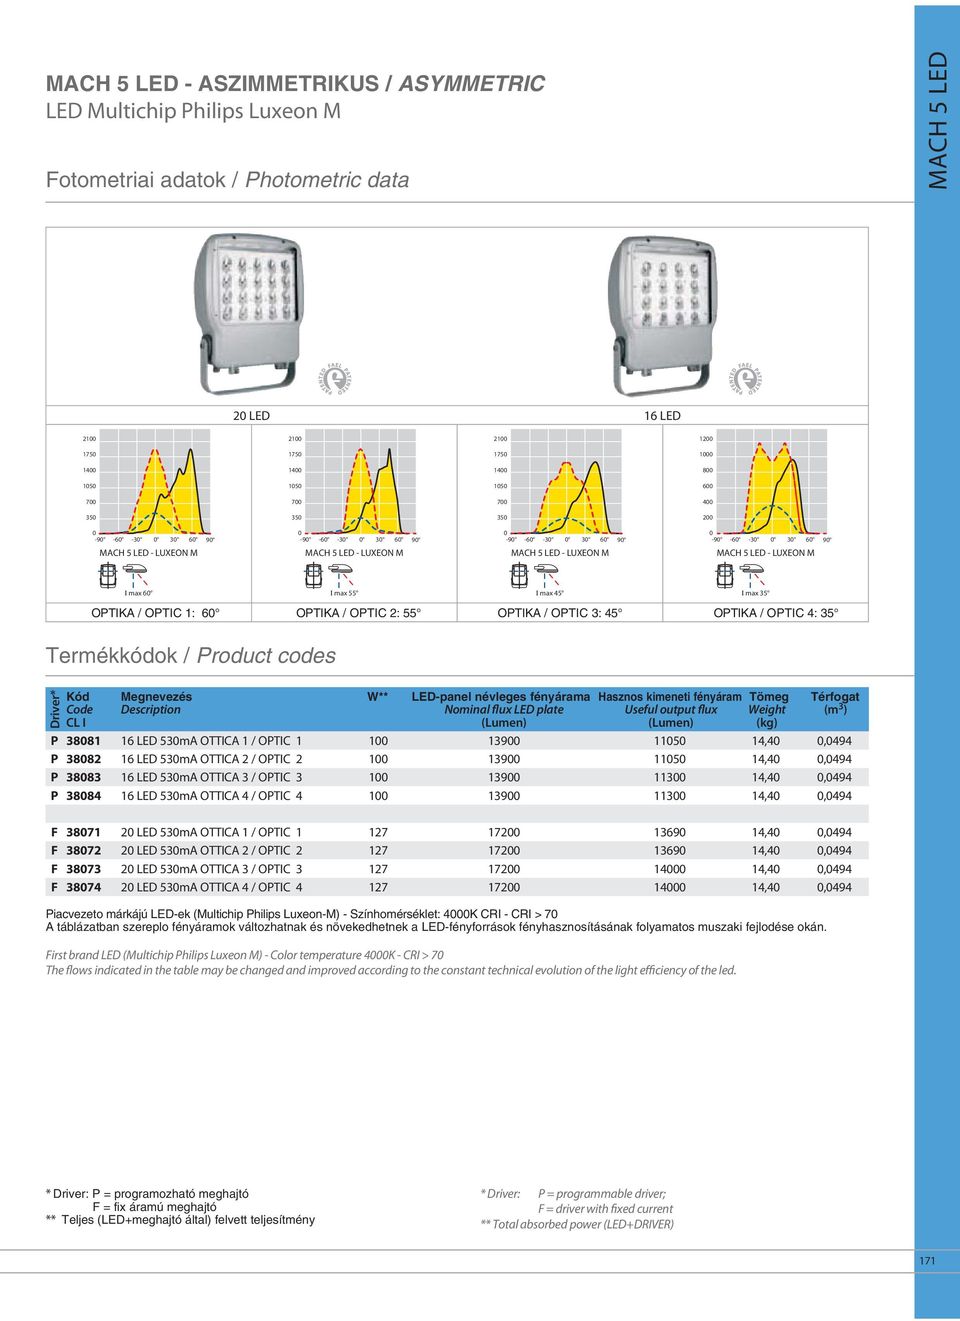 fényárama Nominal flux LED plate Hasznos kimeneti fényáram Useful output flux Tömeg Weight (kg) Térfogat (m 3 ) P 3881 16 LED 53mA OTTICA 1 / OPTIC 1 1 139 115 14,4,494 P 3882 16 LED 53mA OTTICA 2 /